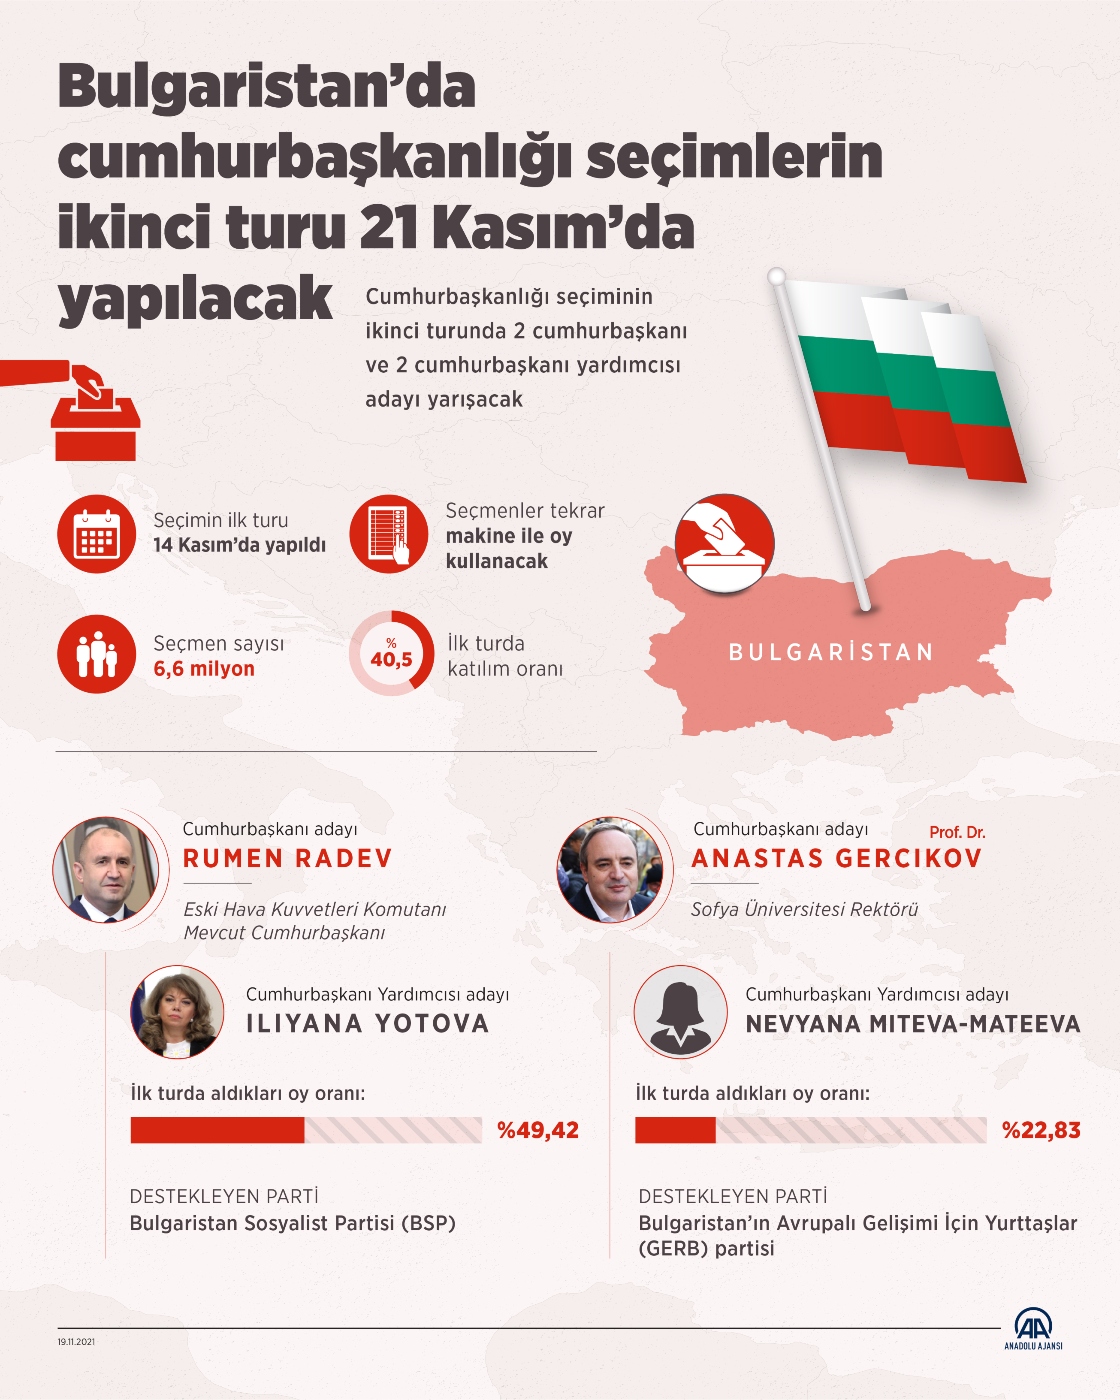 Bulgaristan’da cumhurbaşkanlığı seçimlerin ikinci turu 21 Kasım’da yapılacak